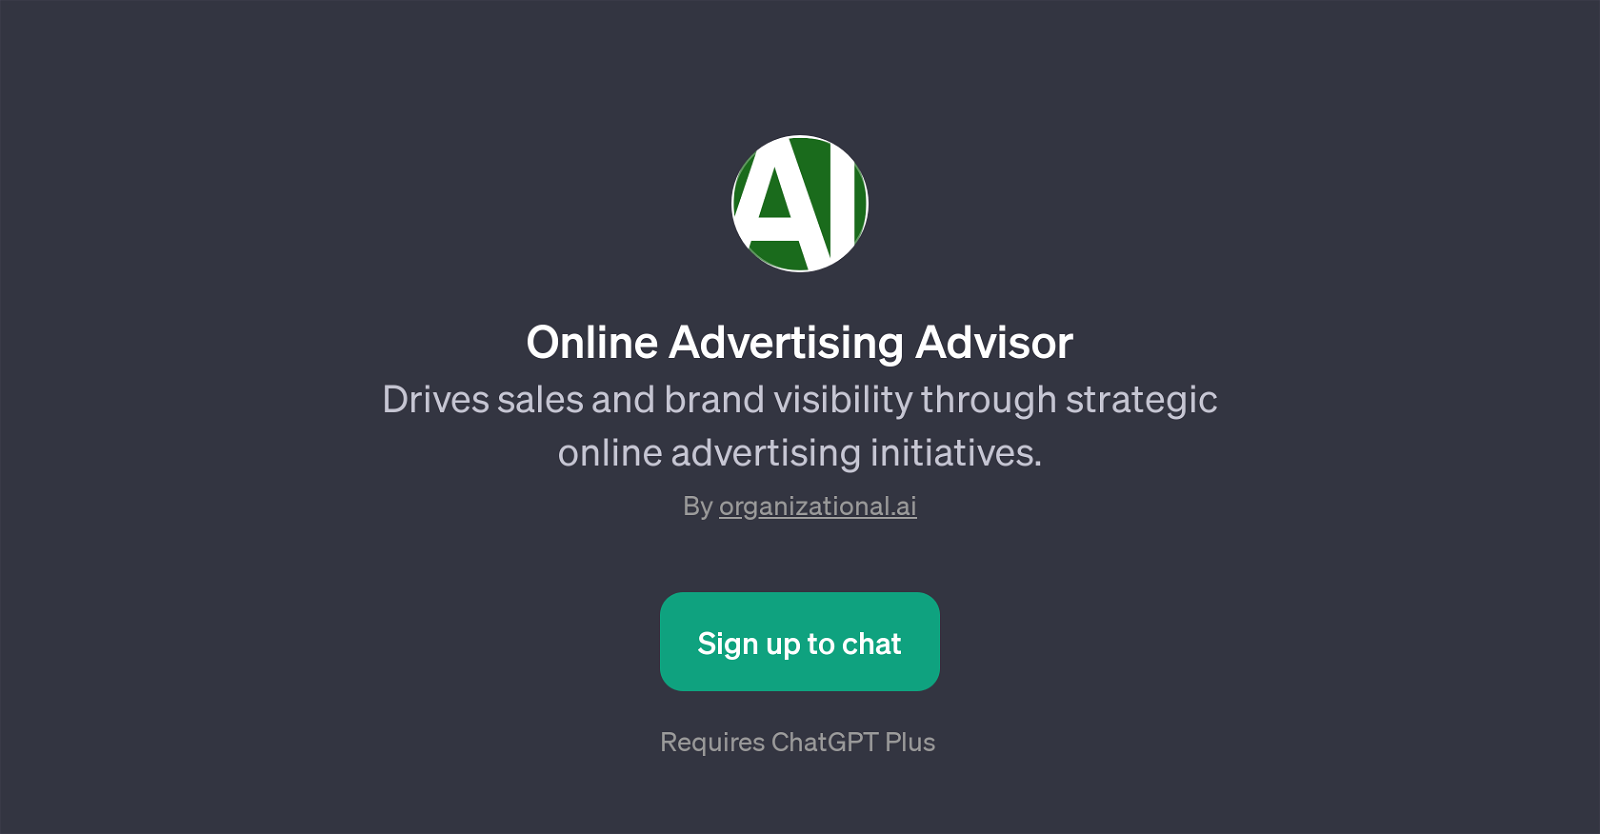 Online Advertising Advisor website